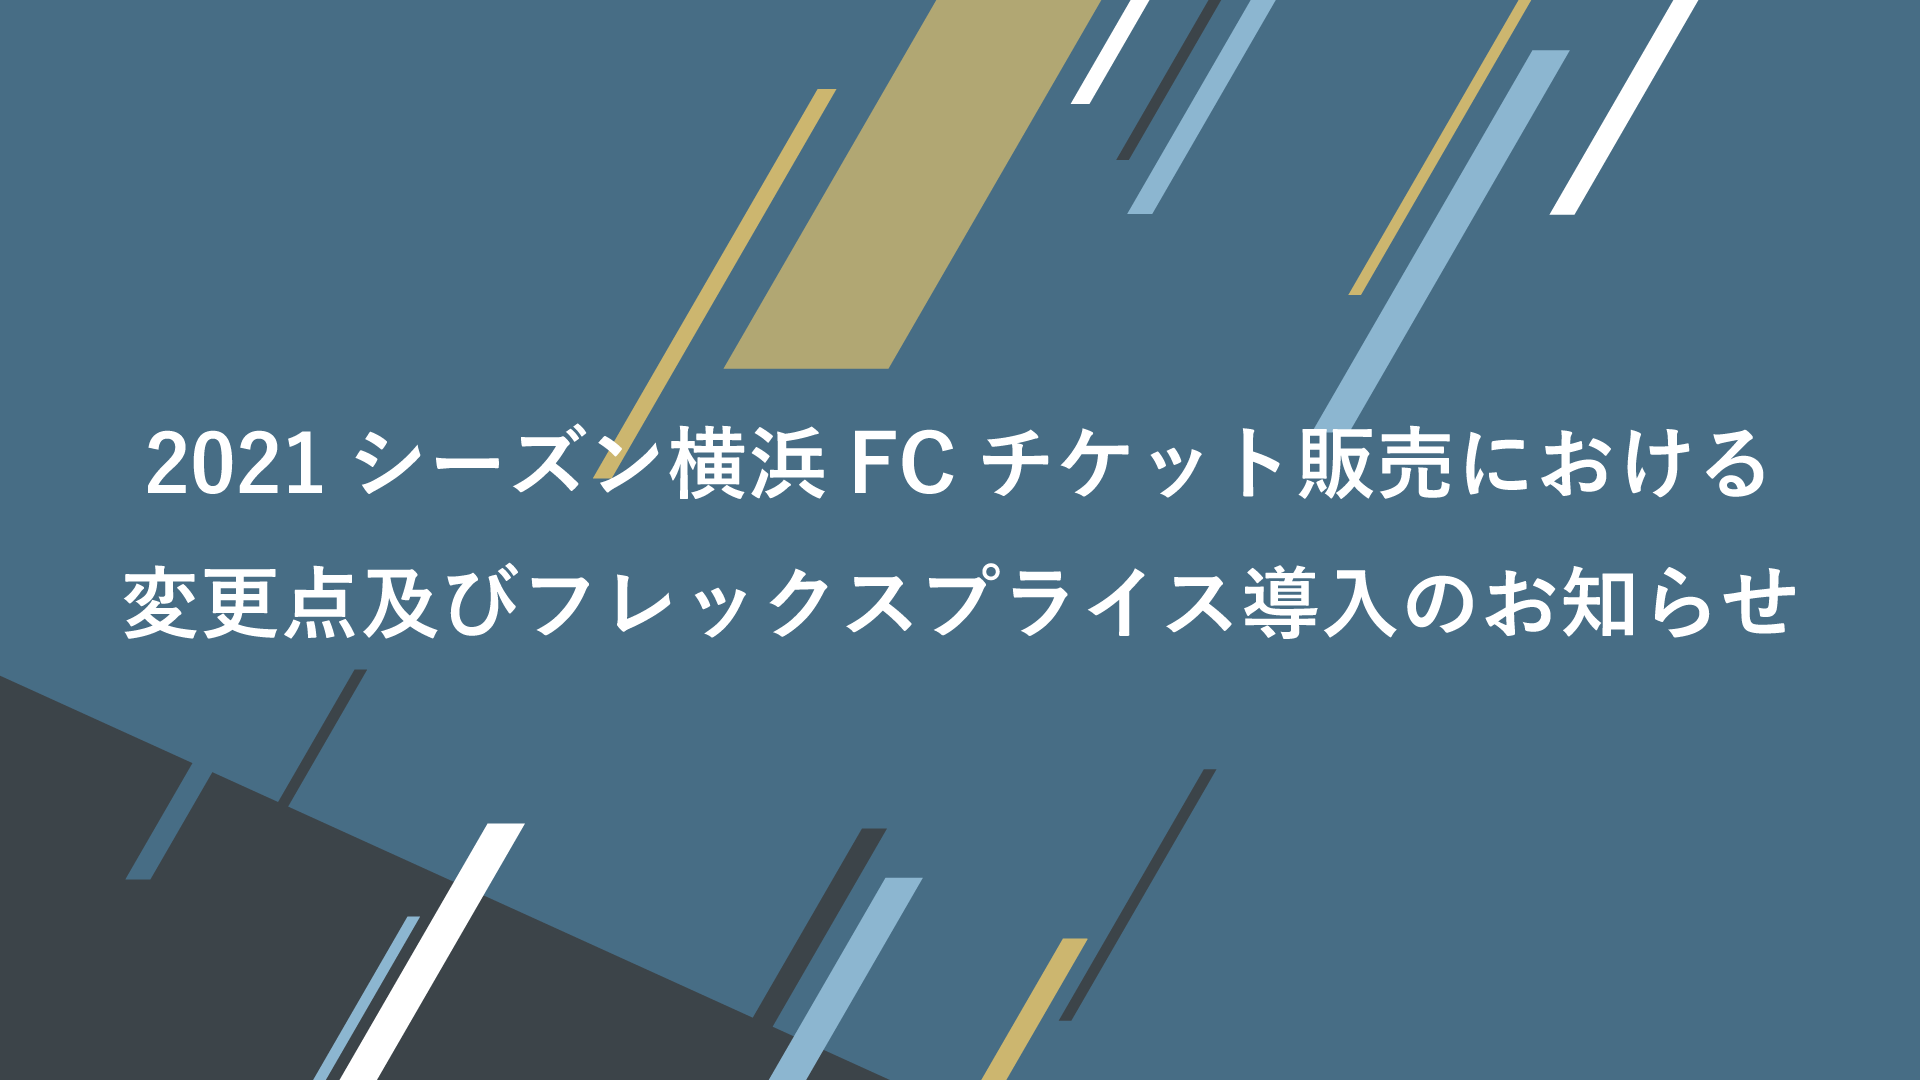 21シーズン横浜fcチケット販売における変更点及びフレックスプライス導入のお知らせ 横浜fcオフィシャルウェブサイト